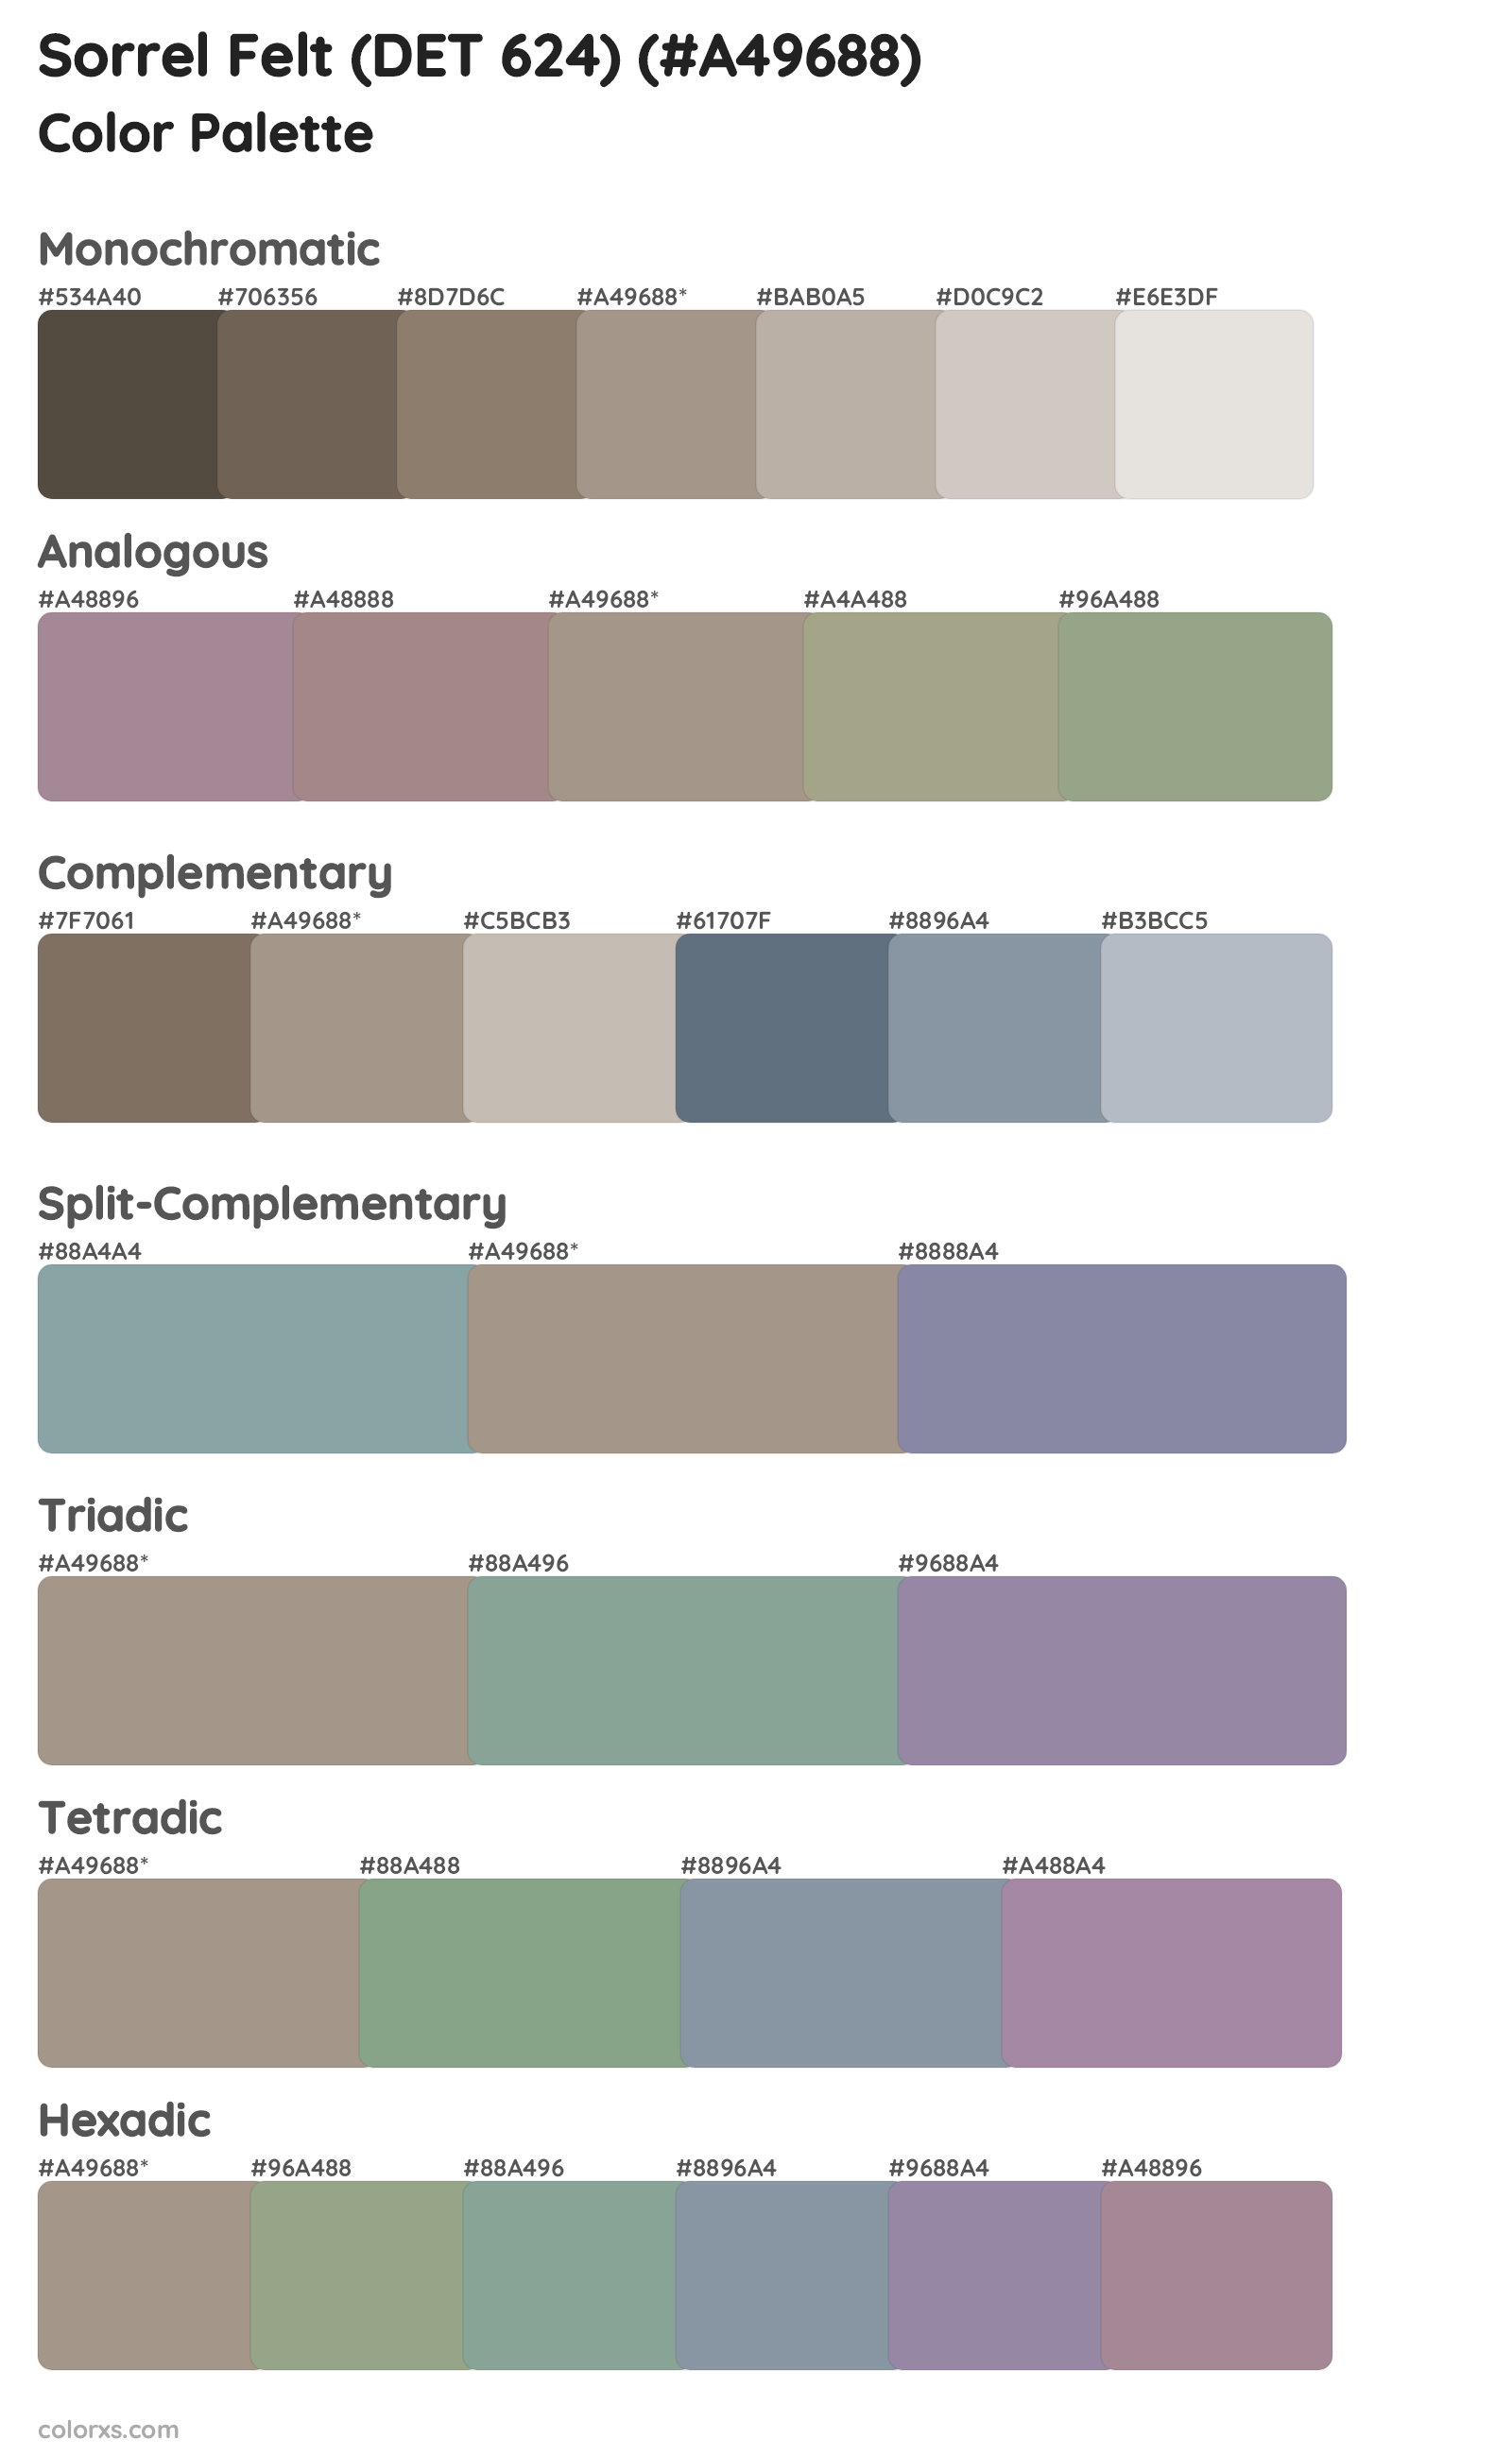 Sorrel Felt (DET 624) Color Scheme Palettes